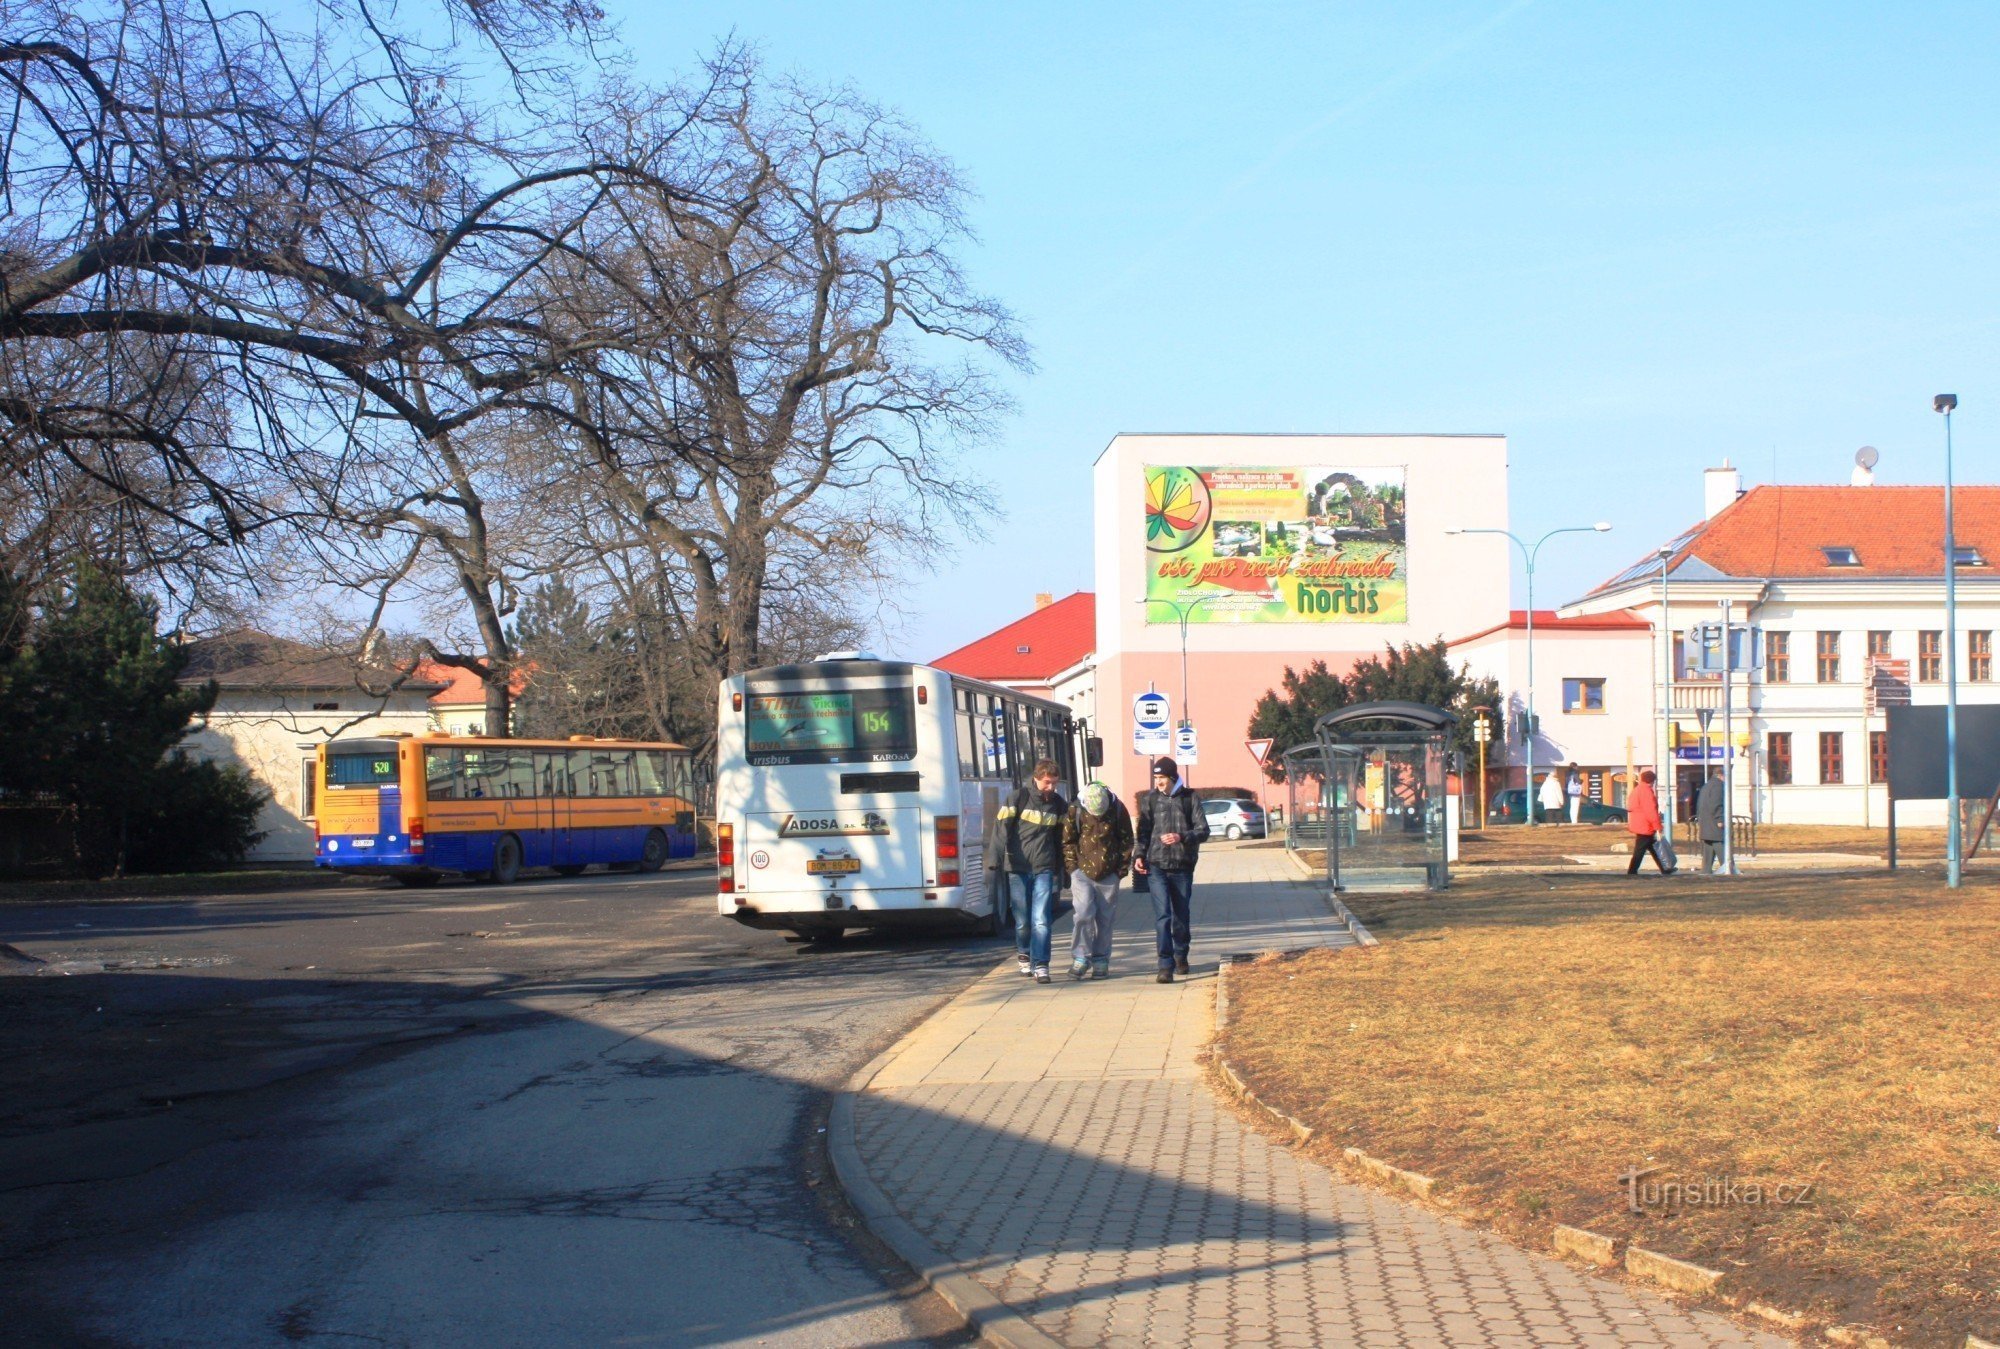 La stazione degli autobus si trova ai margini del parco del castello